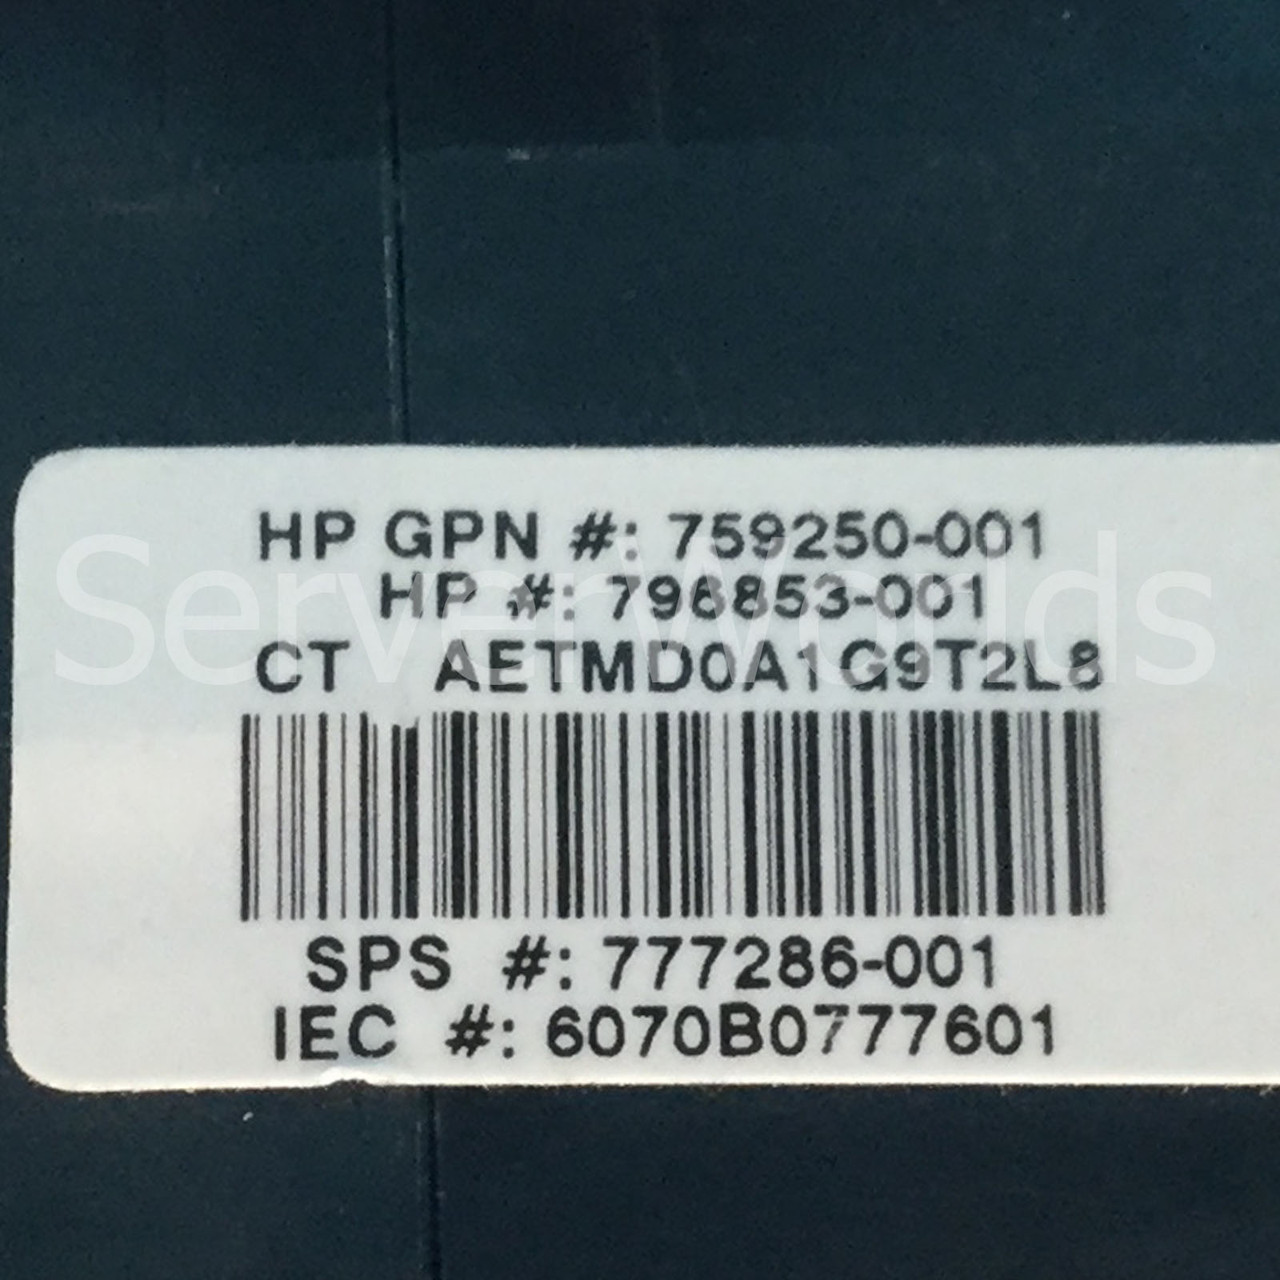 HPE 777286-001 DL380 Gen9 LFF High Performance Fan V60E12BS1M3-08T062